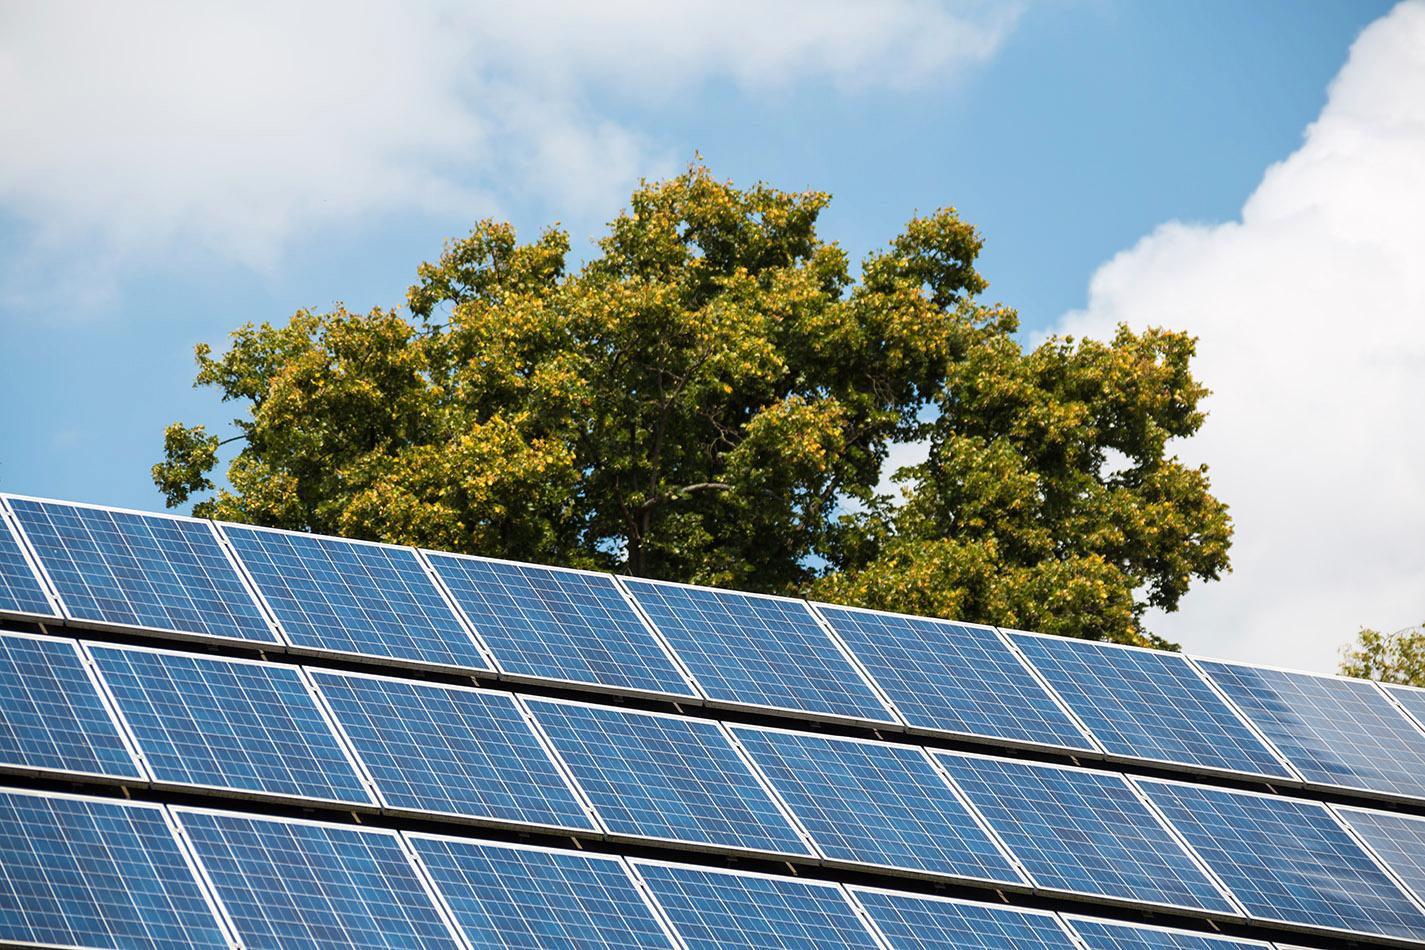 Regeringen satsar nästan 1 miljard kronor på stöd till solceller under 2018.